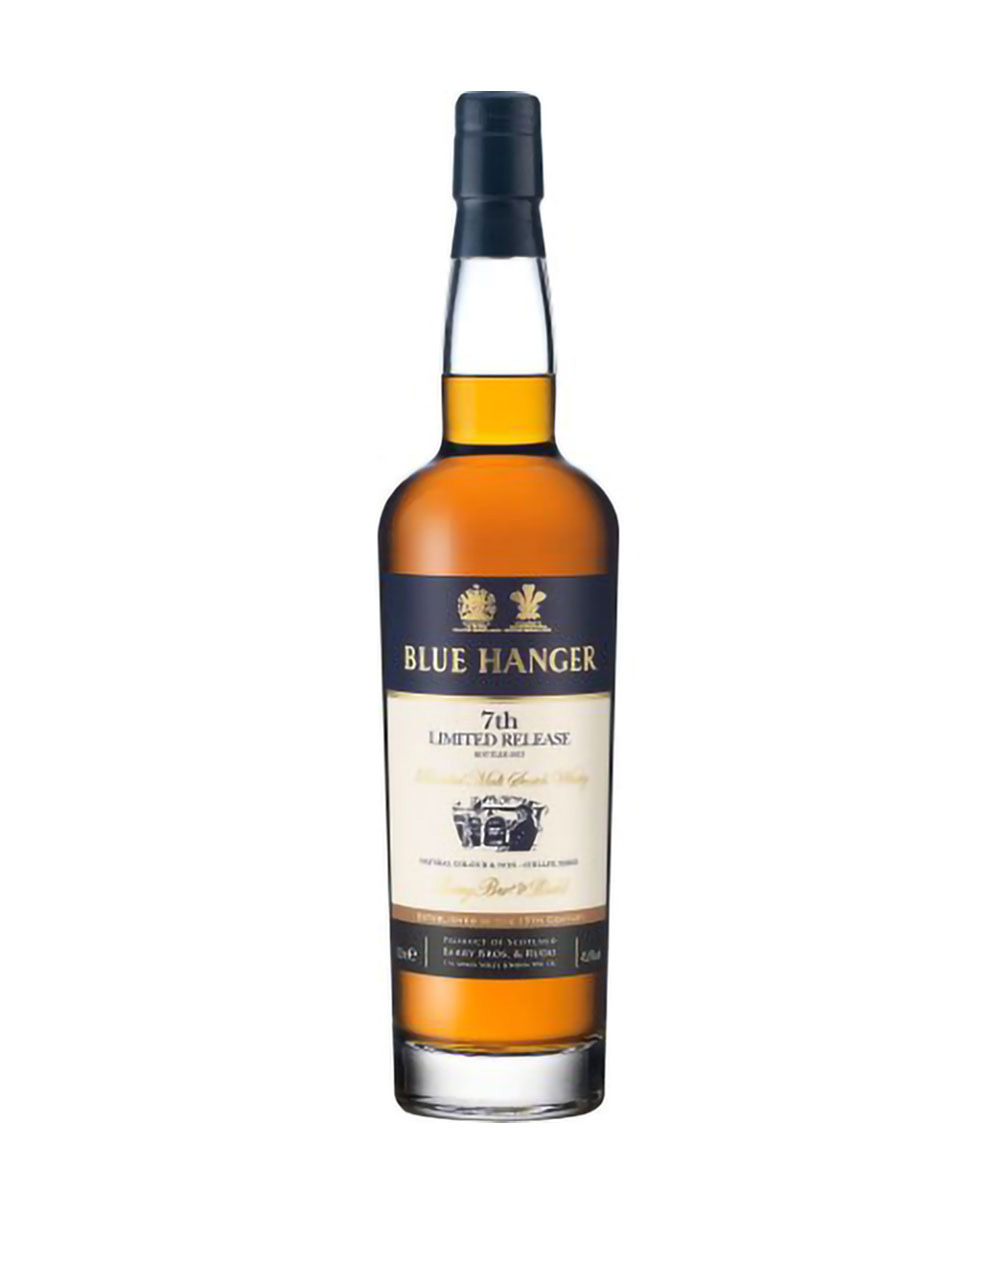 Blue Hanger Blended Malt Scotch Whisky 7th Limited Release